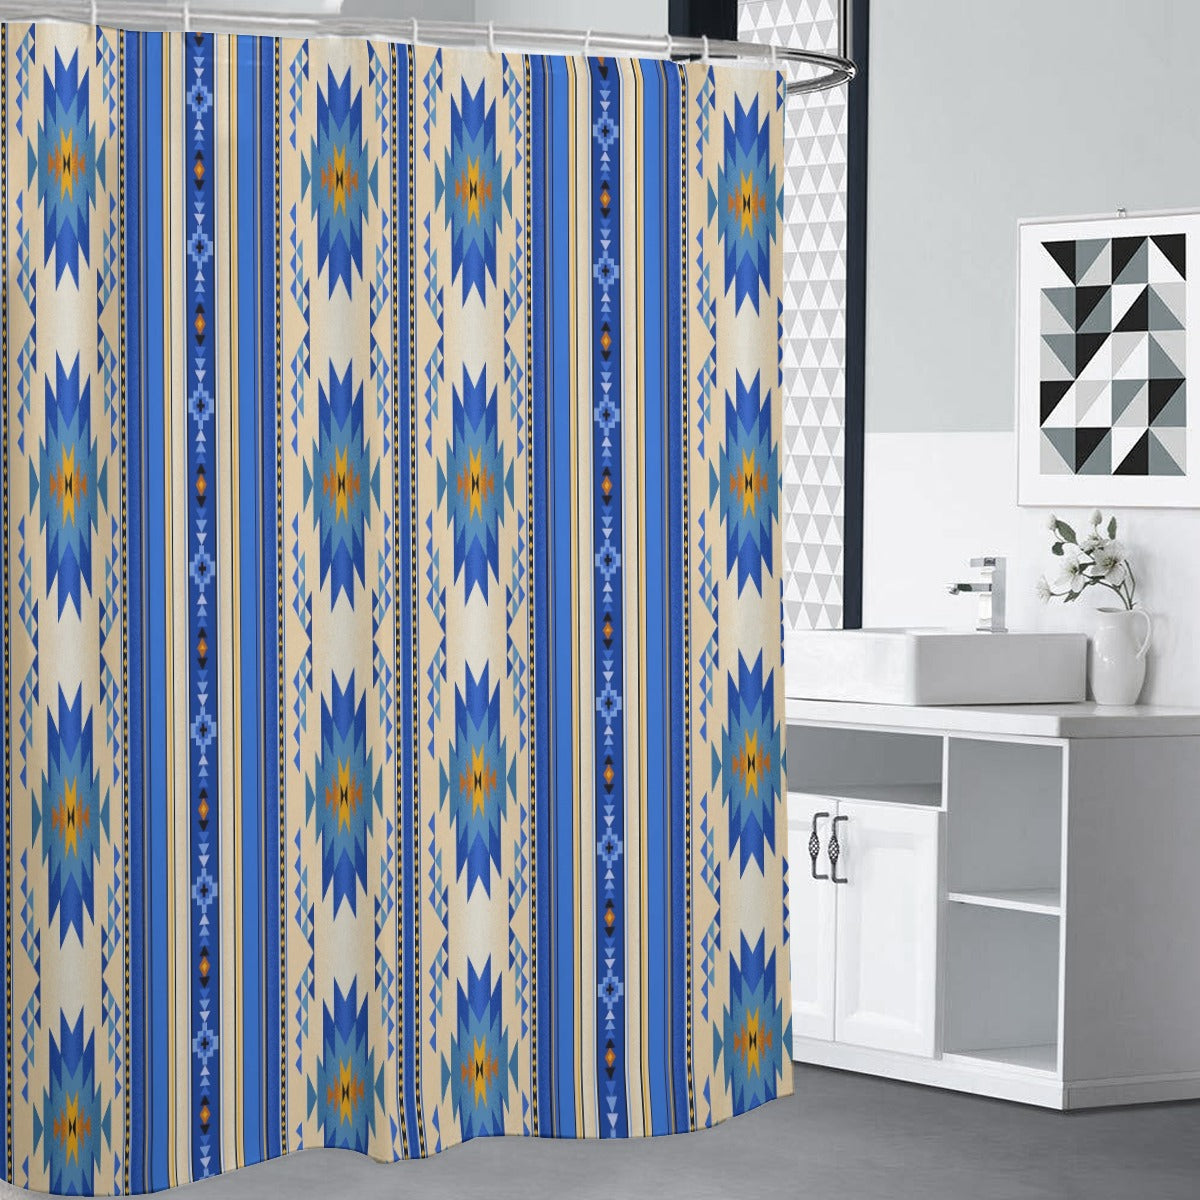 Royal Blue & Tan Aztec Shower Curtains